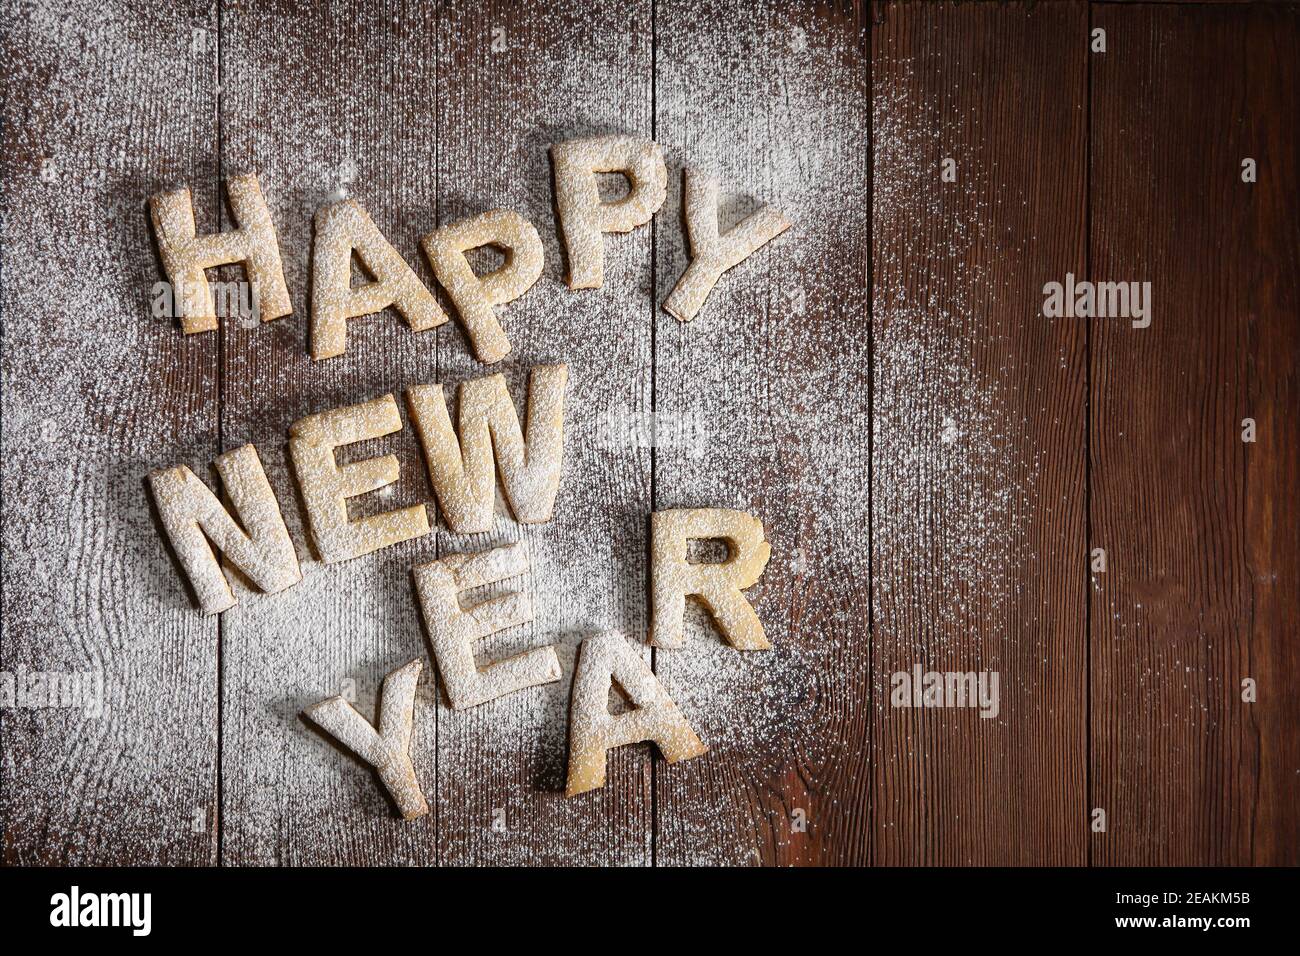 Die Inschrift Happy New Year-Kekse in Form von Buchstaben aus Ingwerteig. Ingwer-Kekse, Neujahr-Konzept . Handarbeit. Der Druck ist wie eine Schablone.Draufsicht. Stockfoto